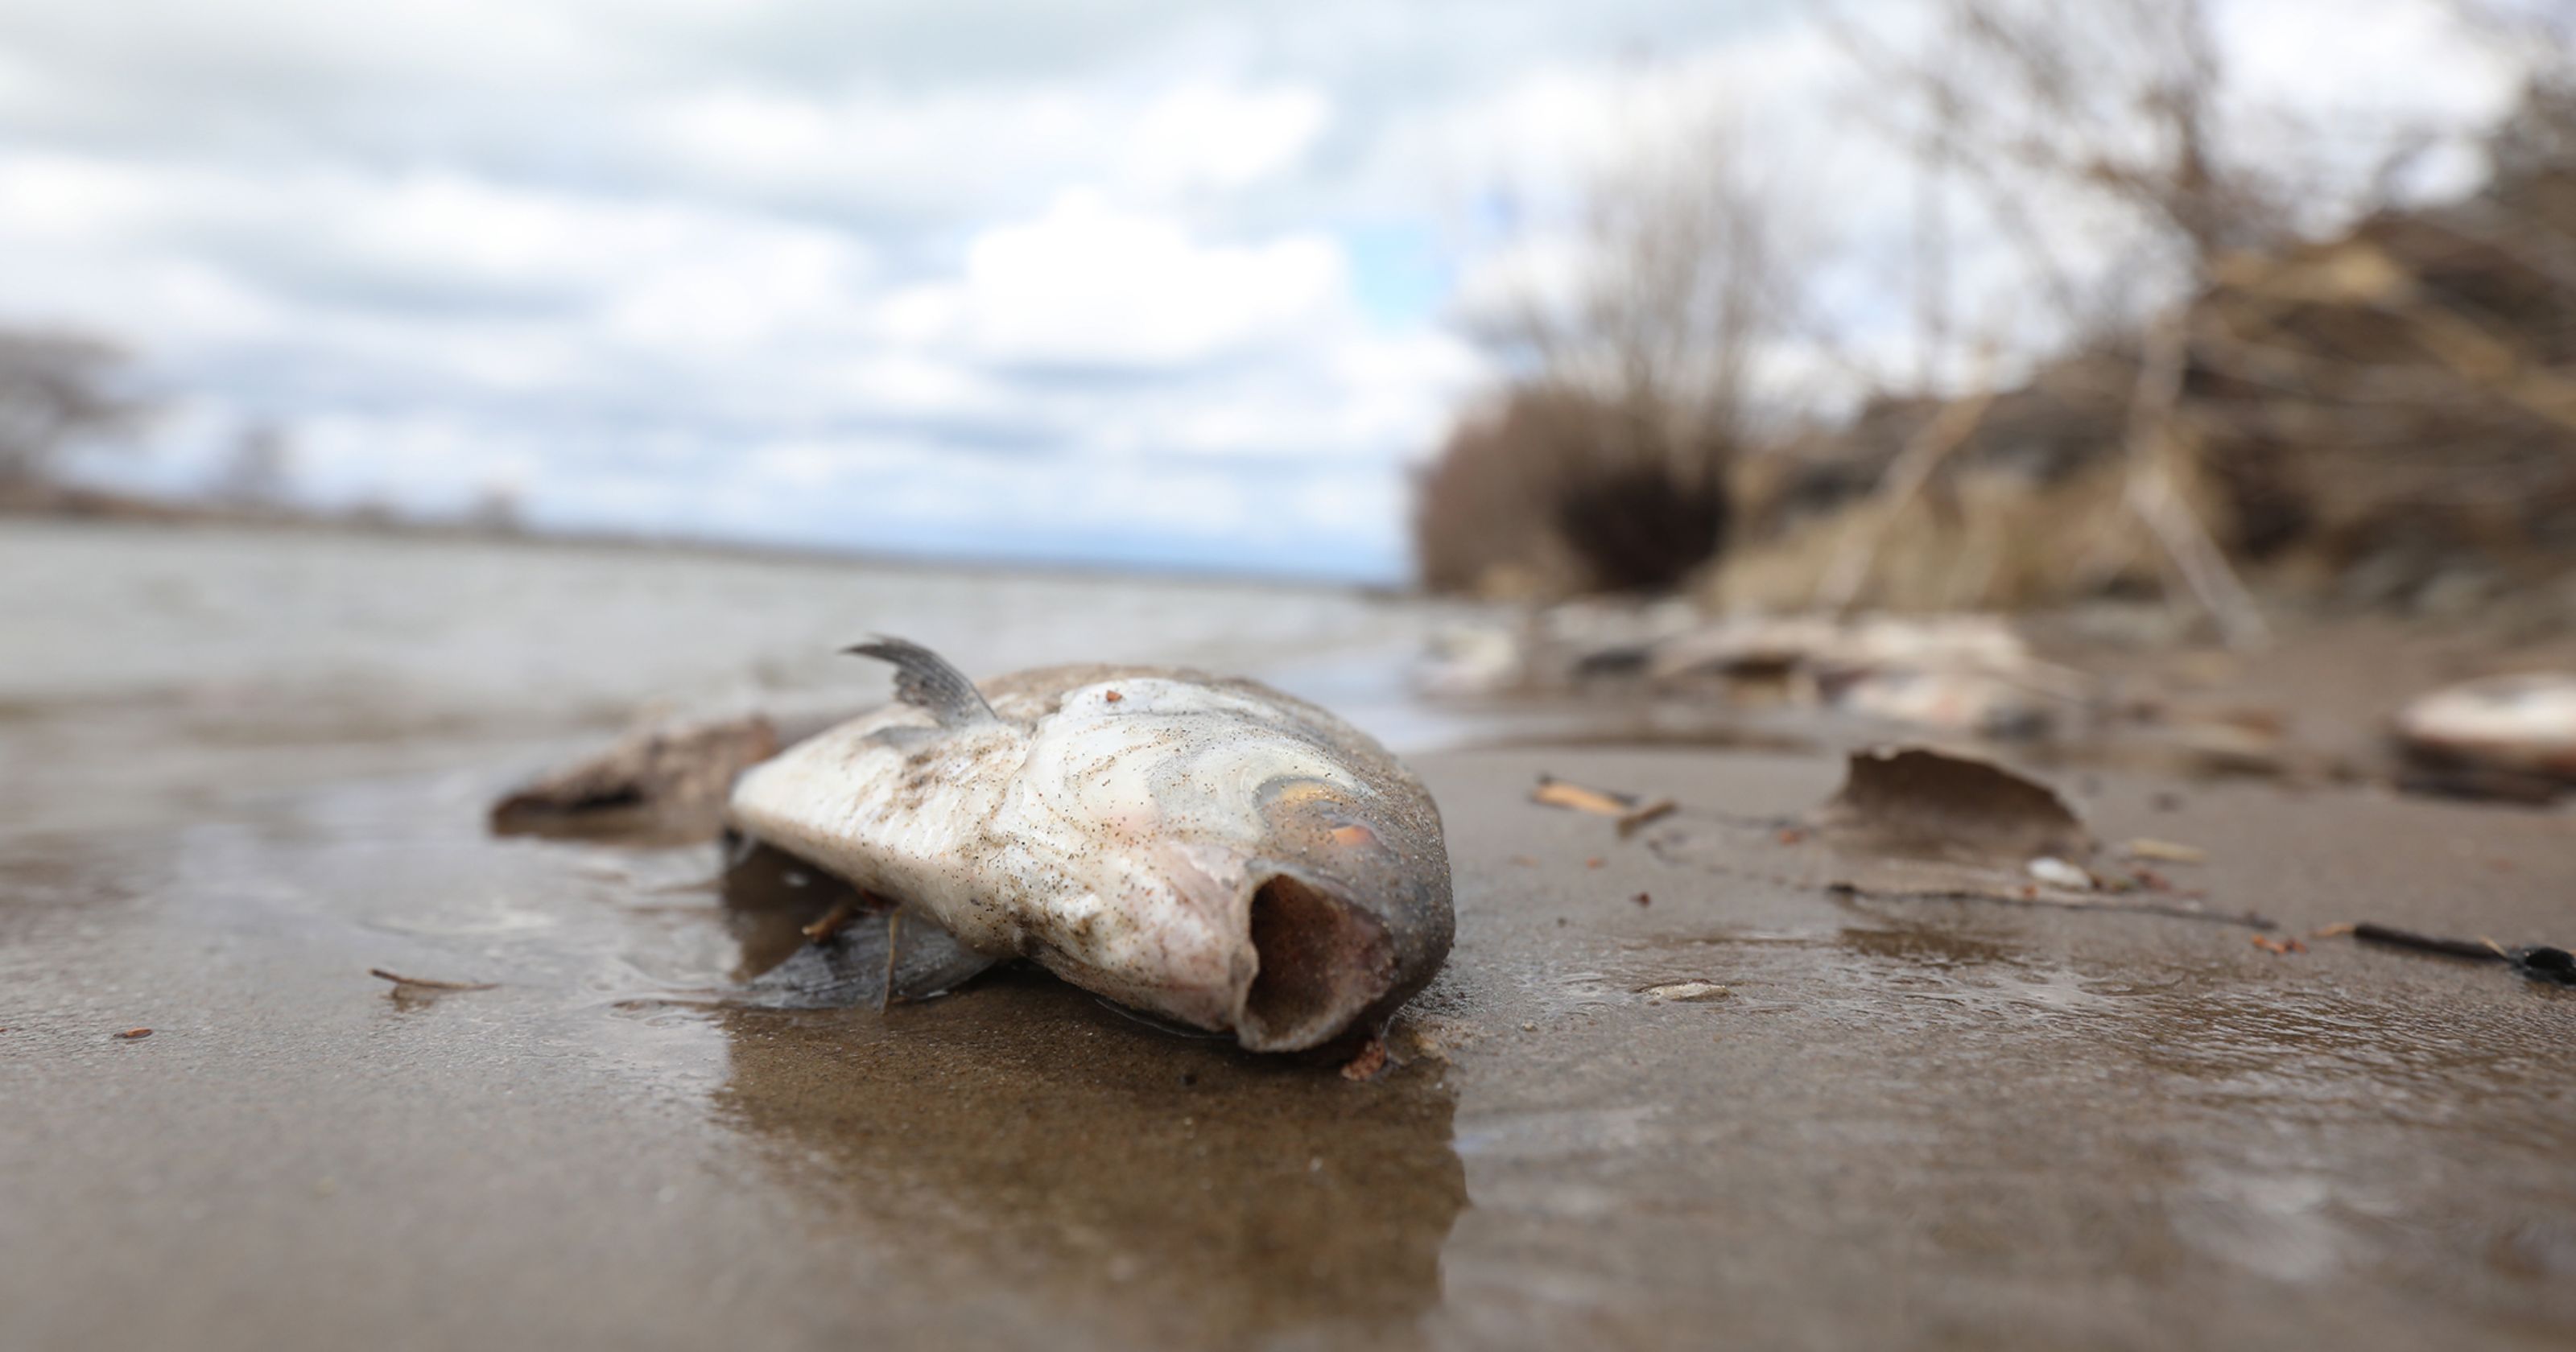 Dead fish photo